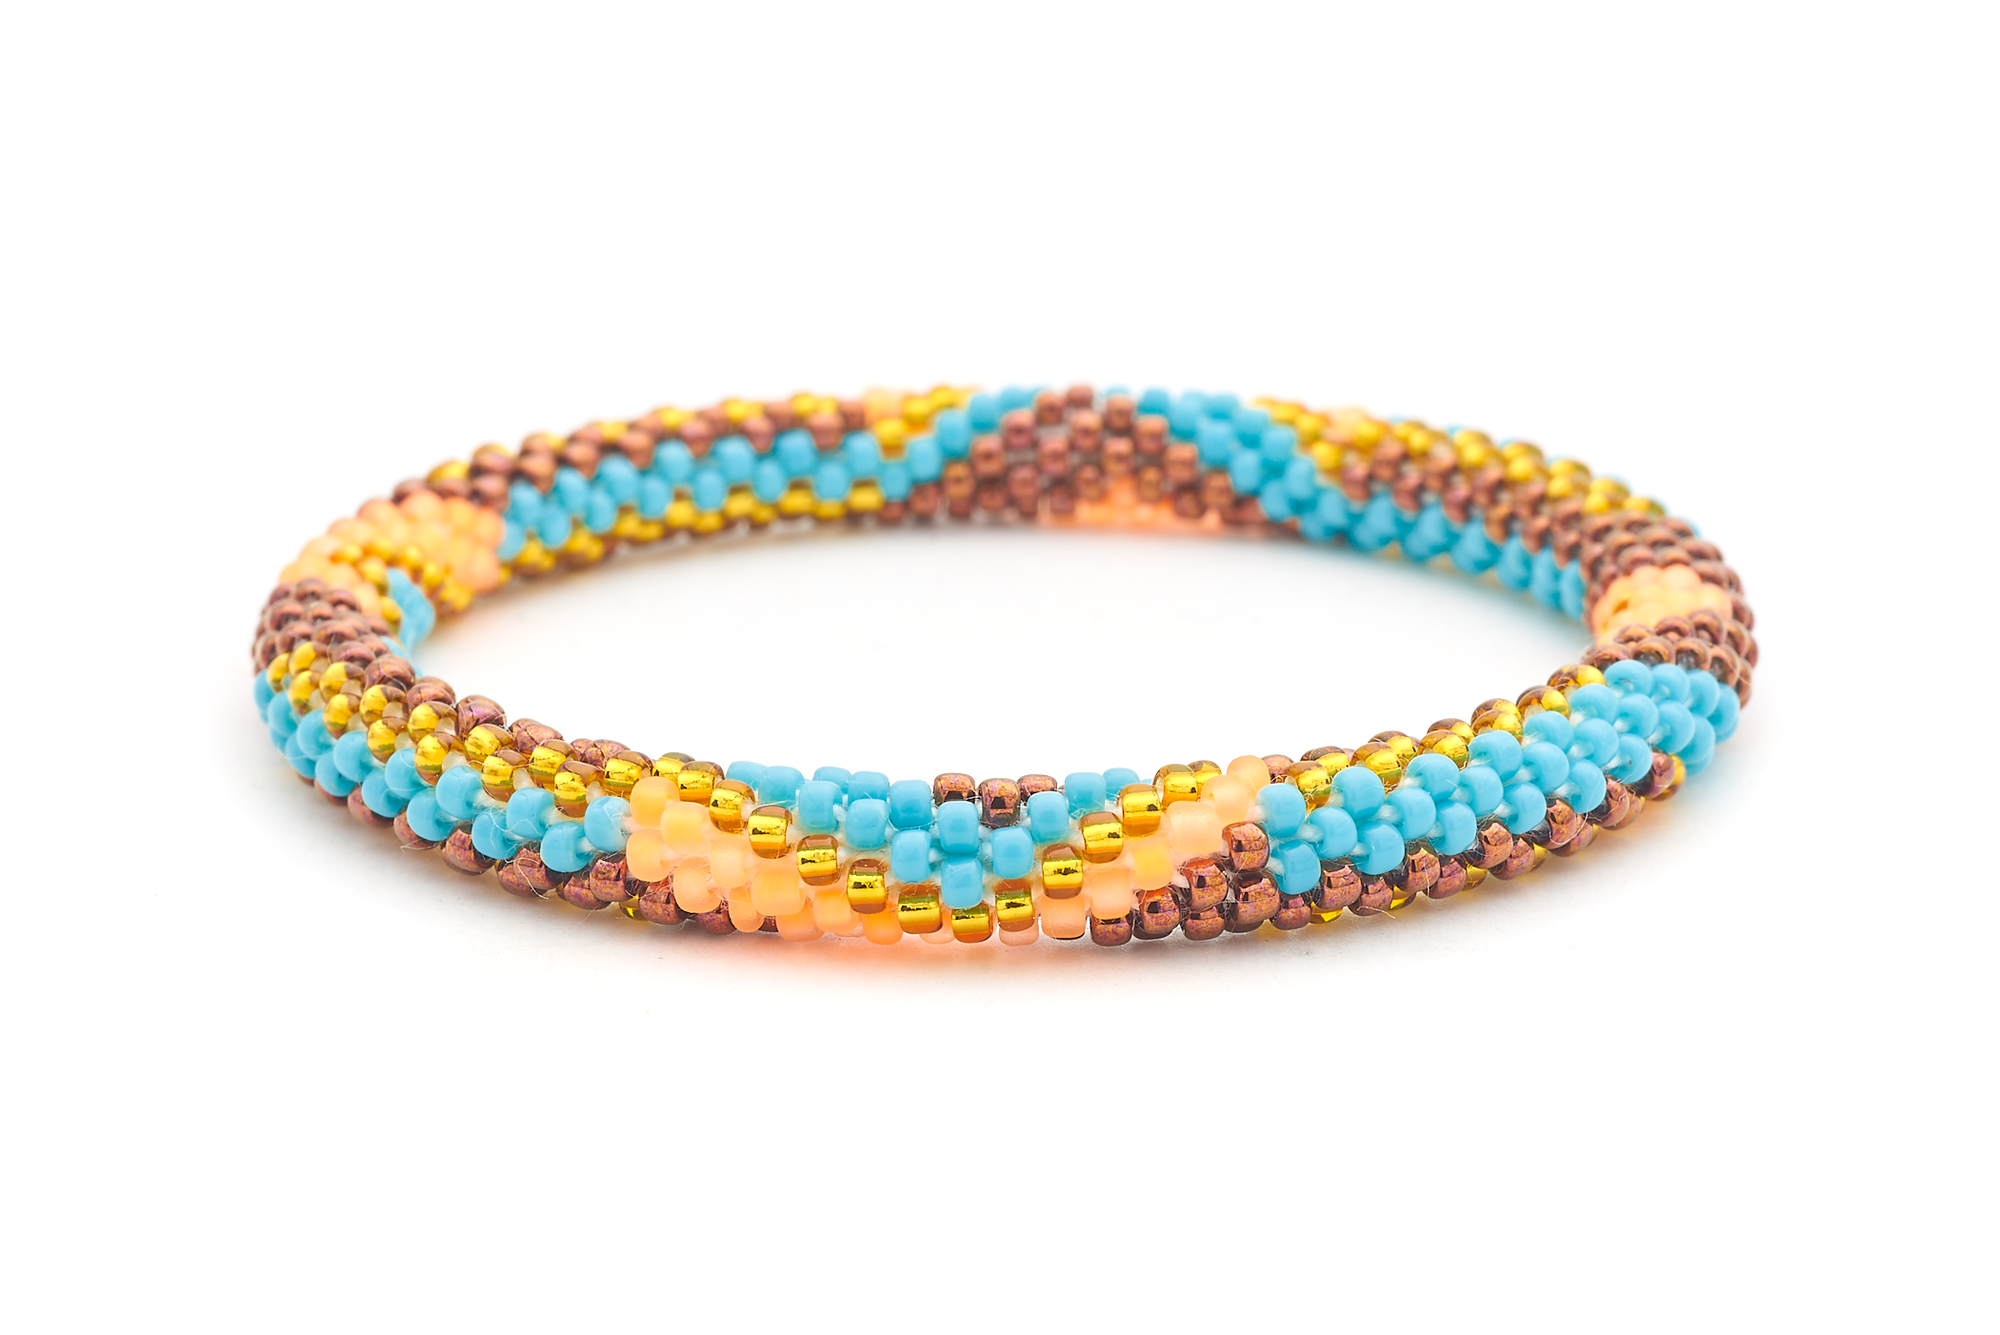 Sashka Co. Extended 8" Bracelet Turquoise / Orange / Brown / Gold Boho Beauty Bracelet - Extended 8"